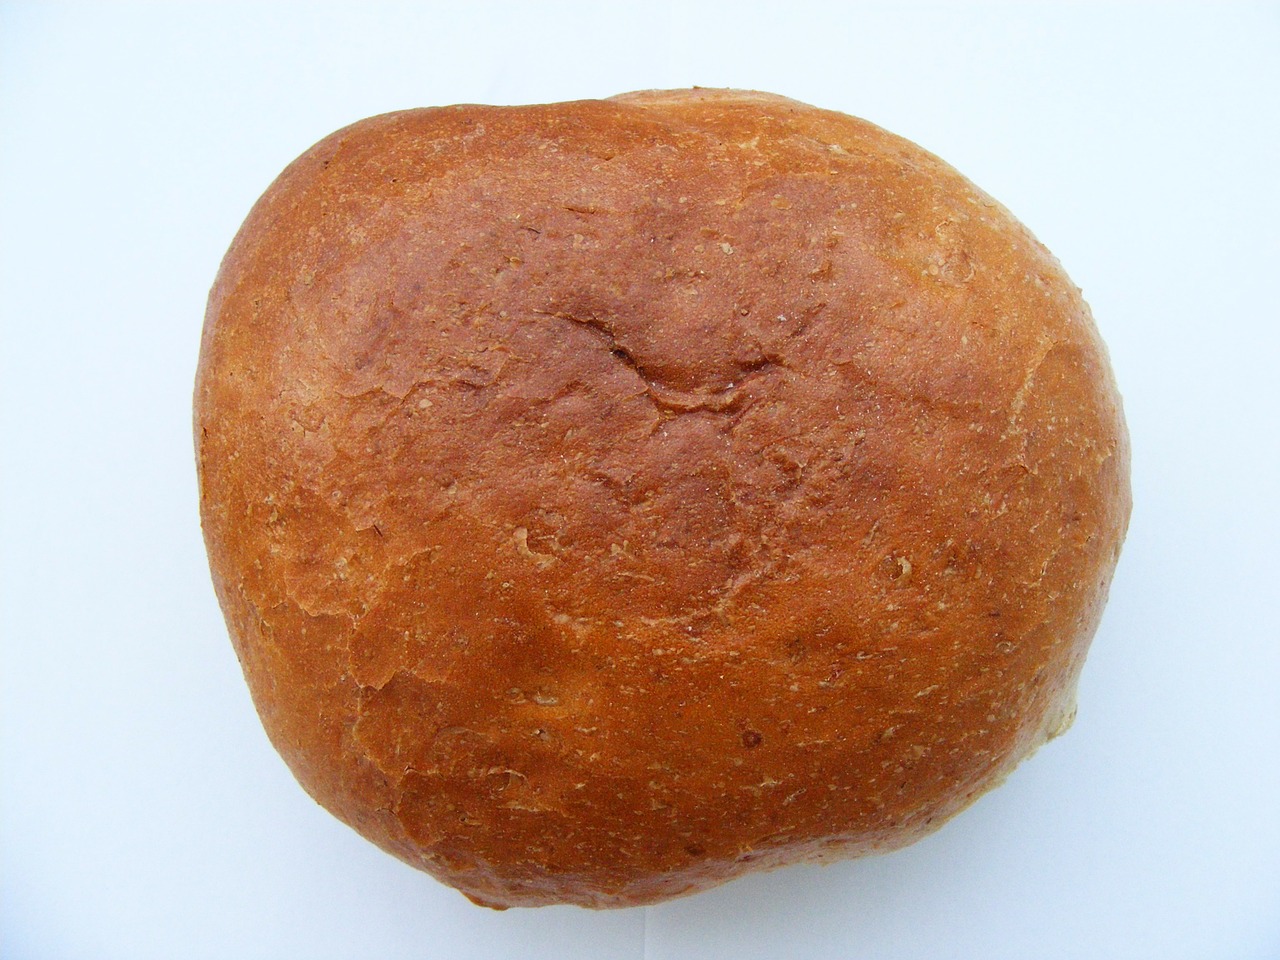 bread fresh bakery free photo